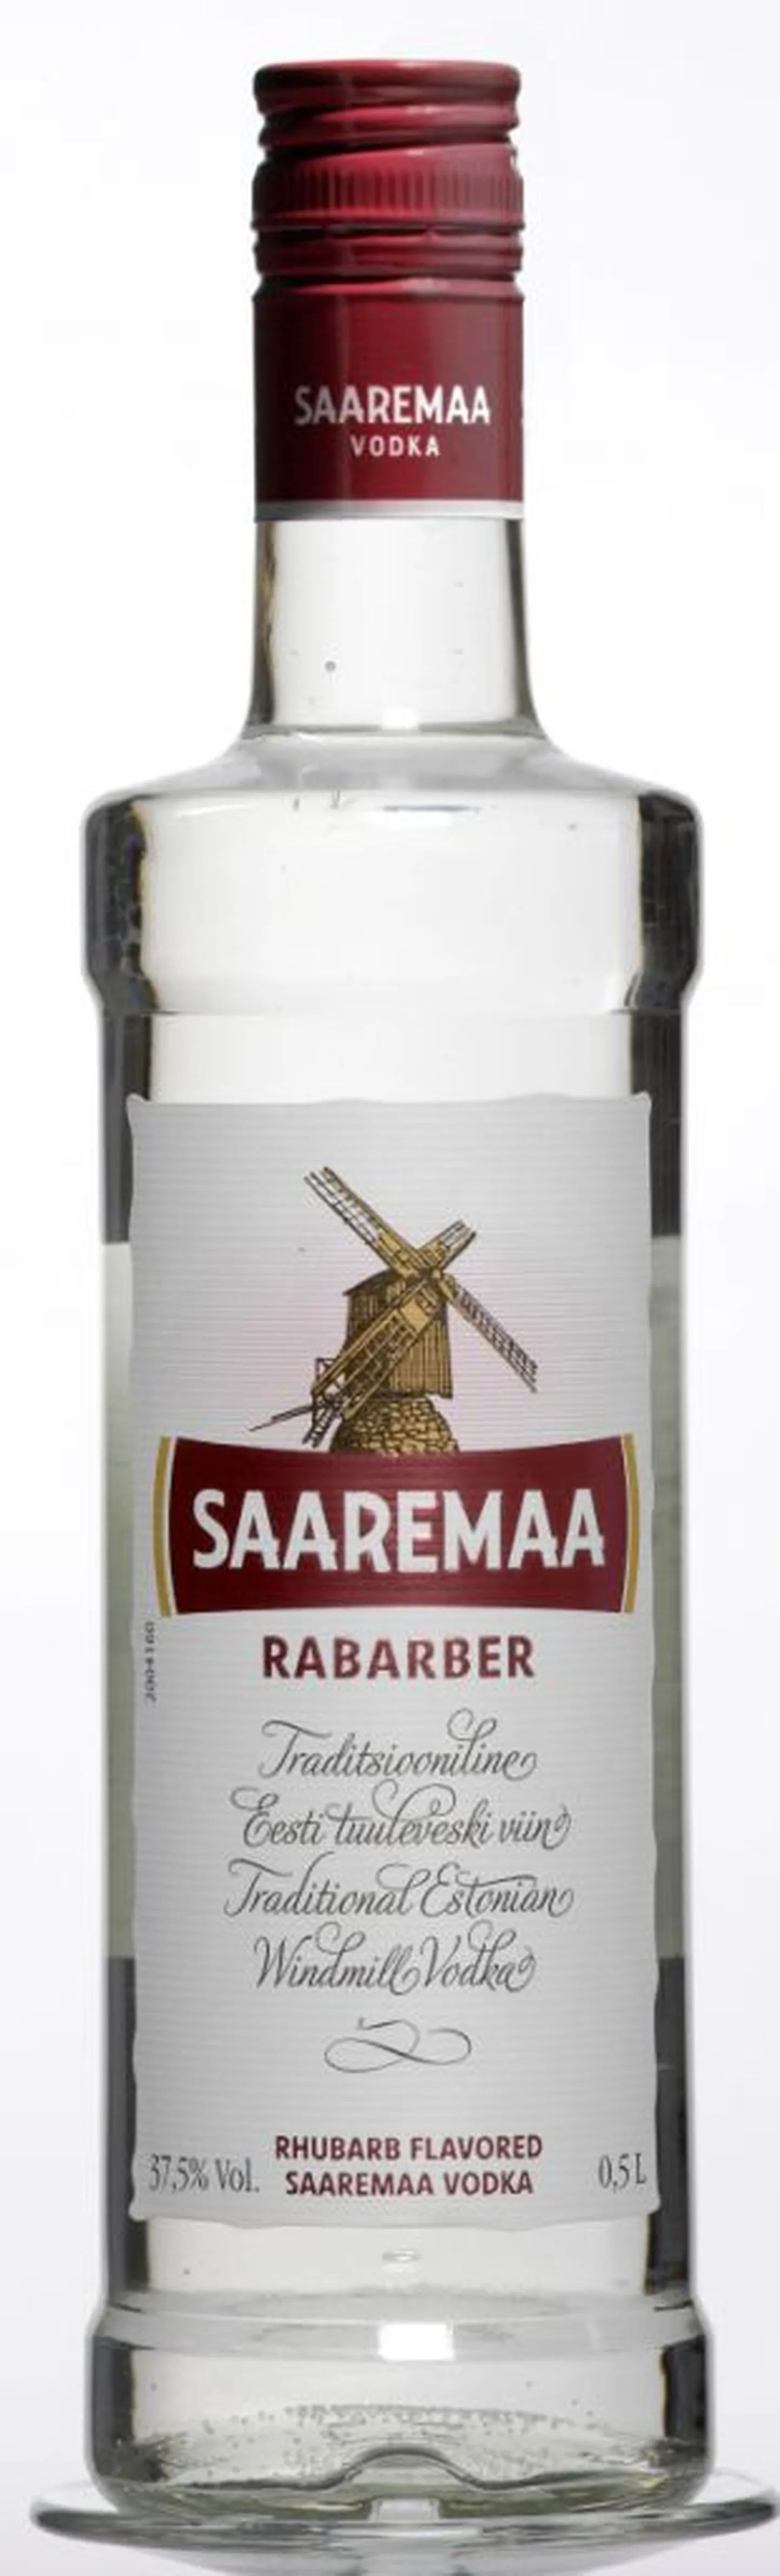 Altiale kuulub ka kaubamärk Saaremaa vodka.